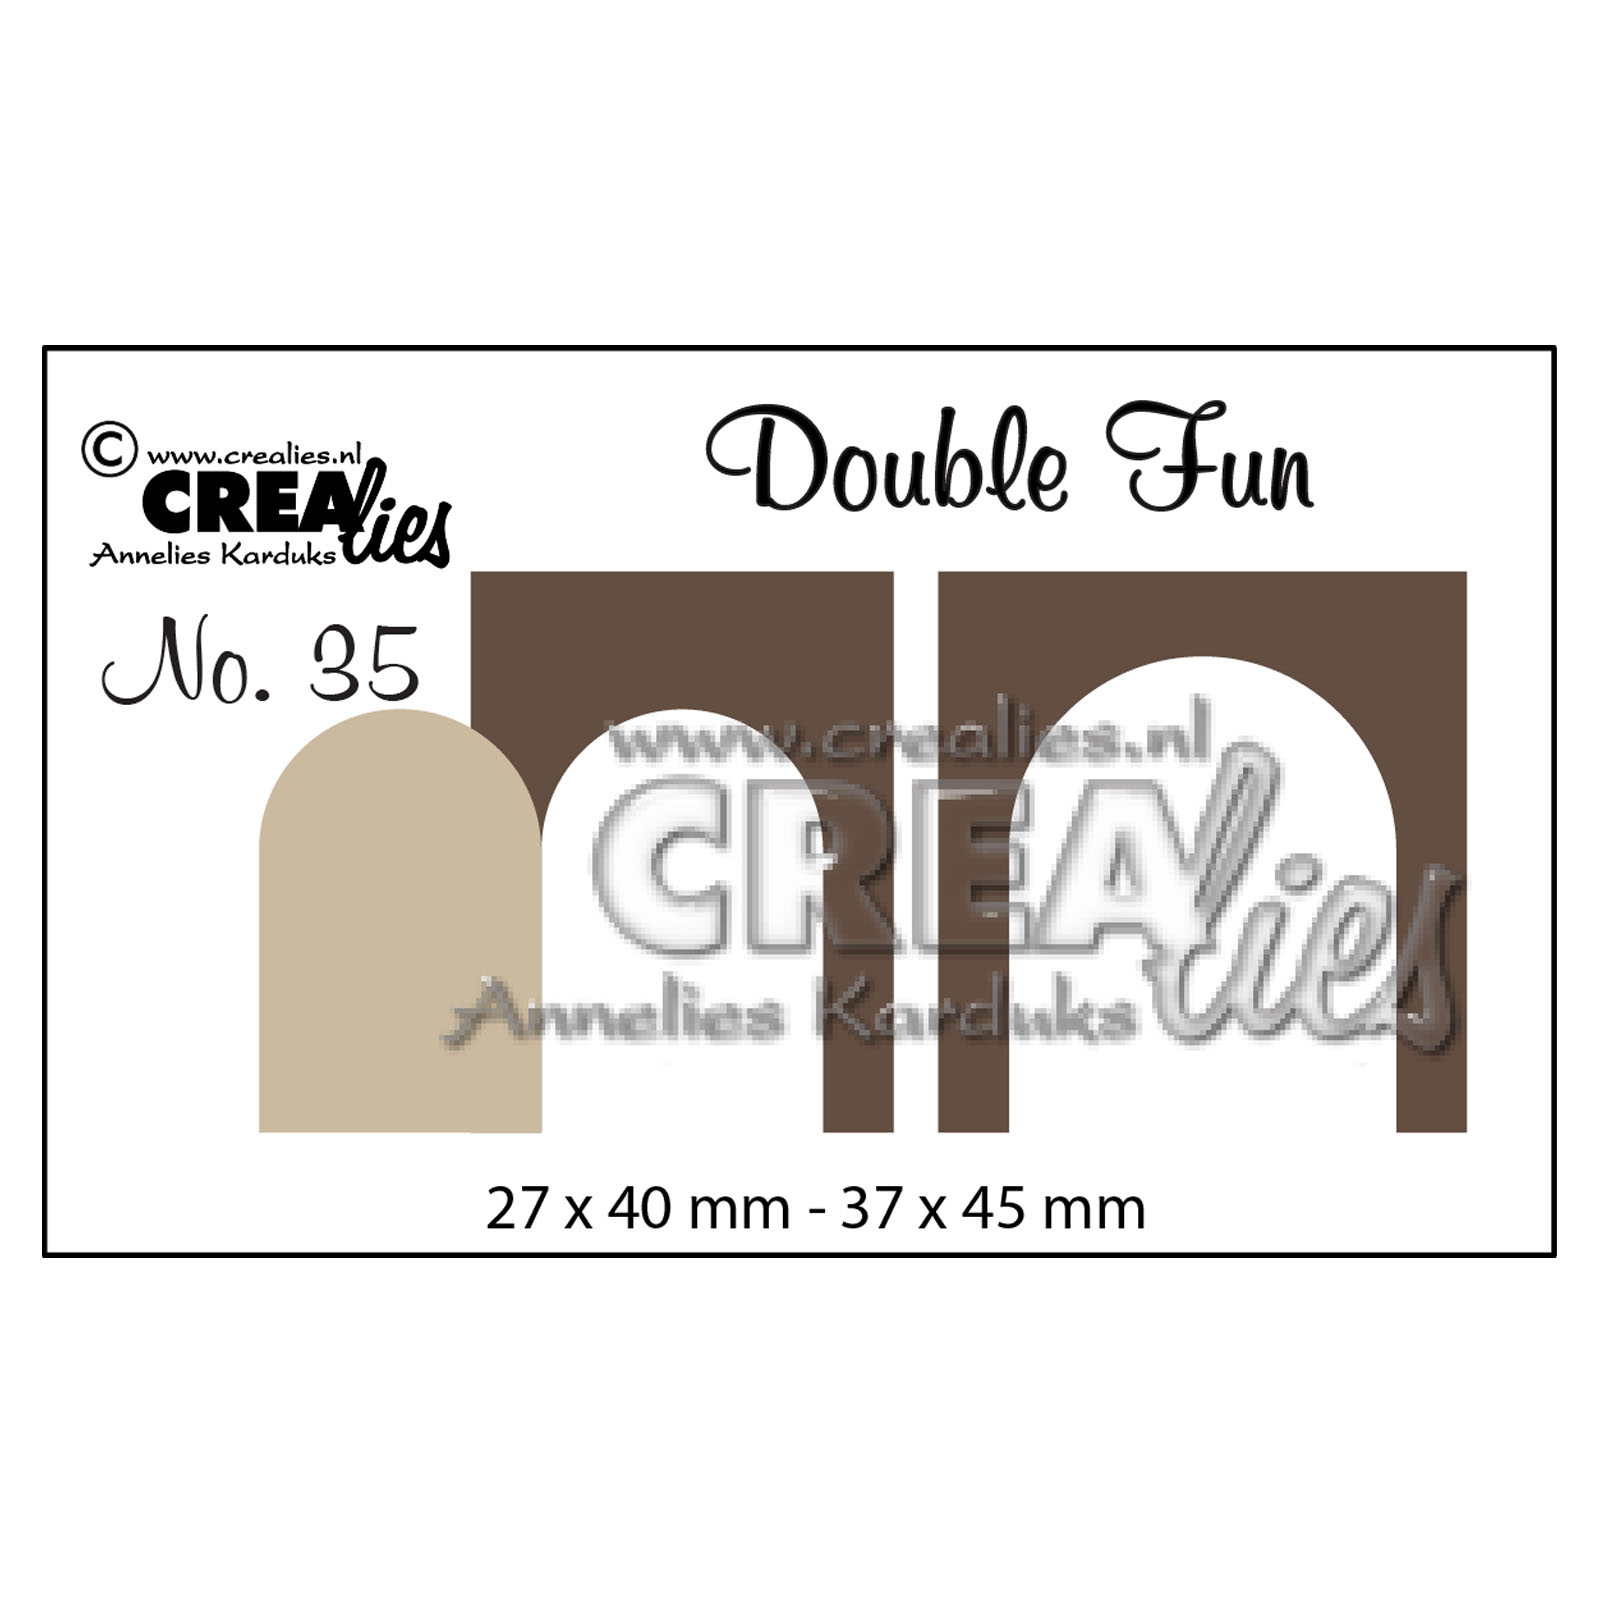 Crealies • Double fun plantilla de corte no.35 Doghouse doors